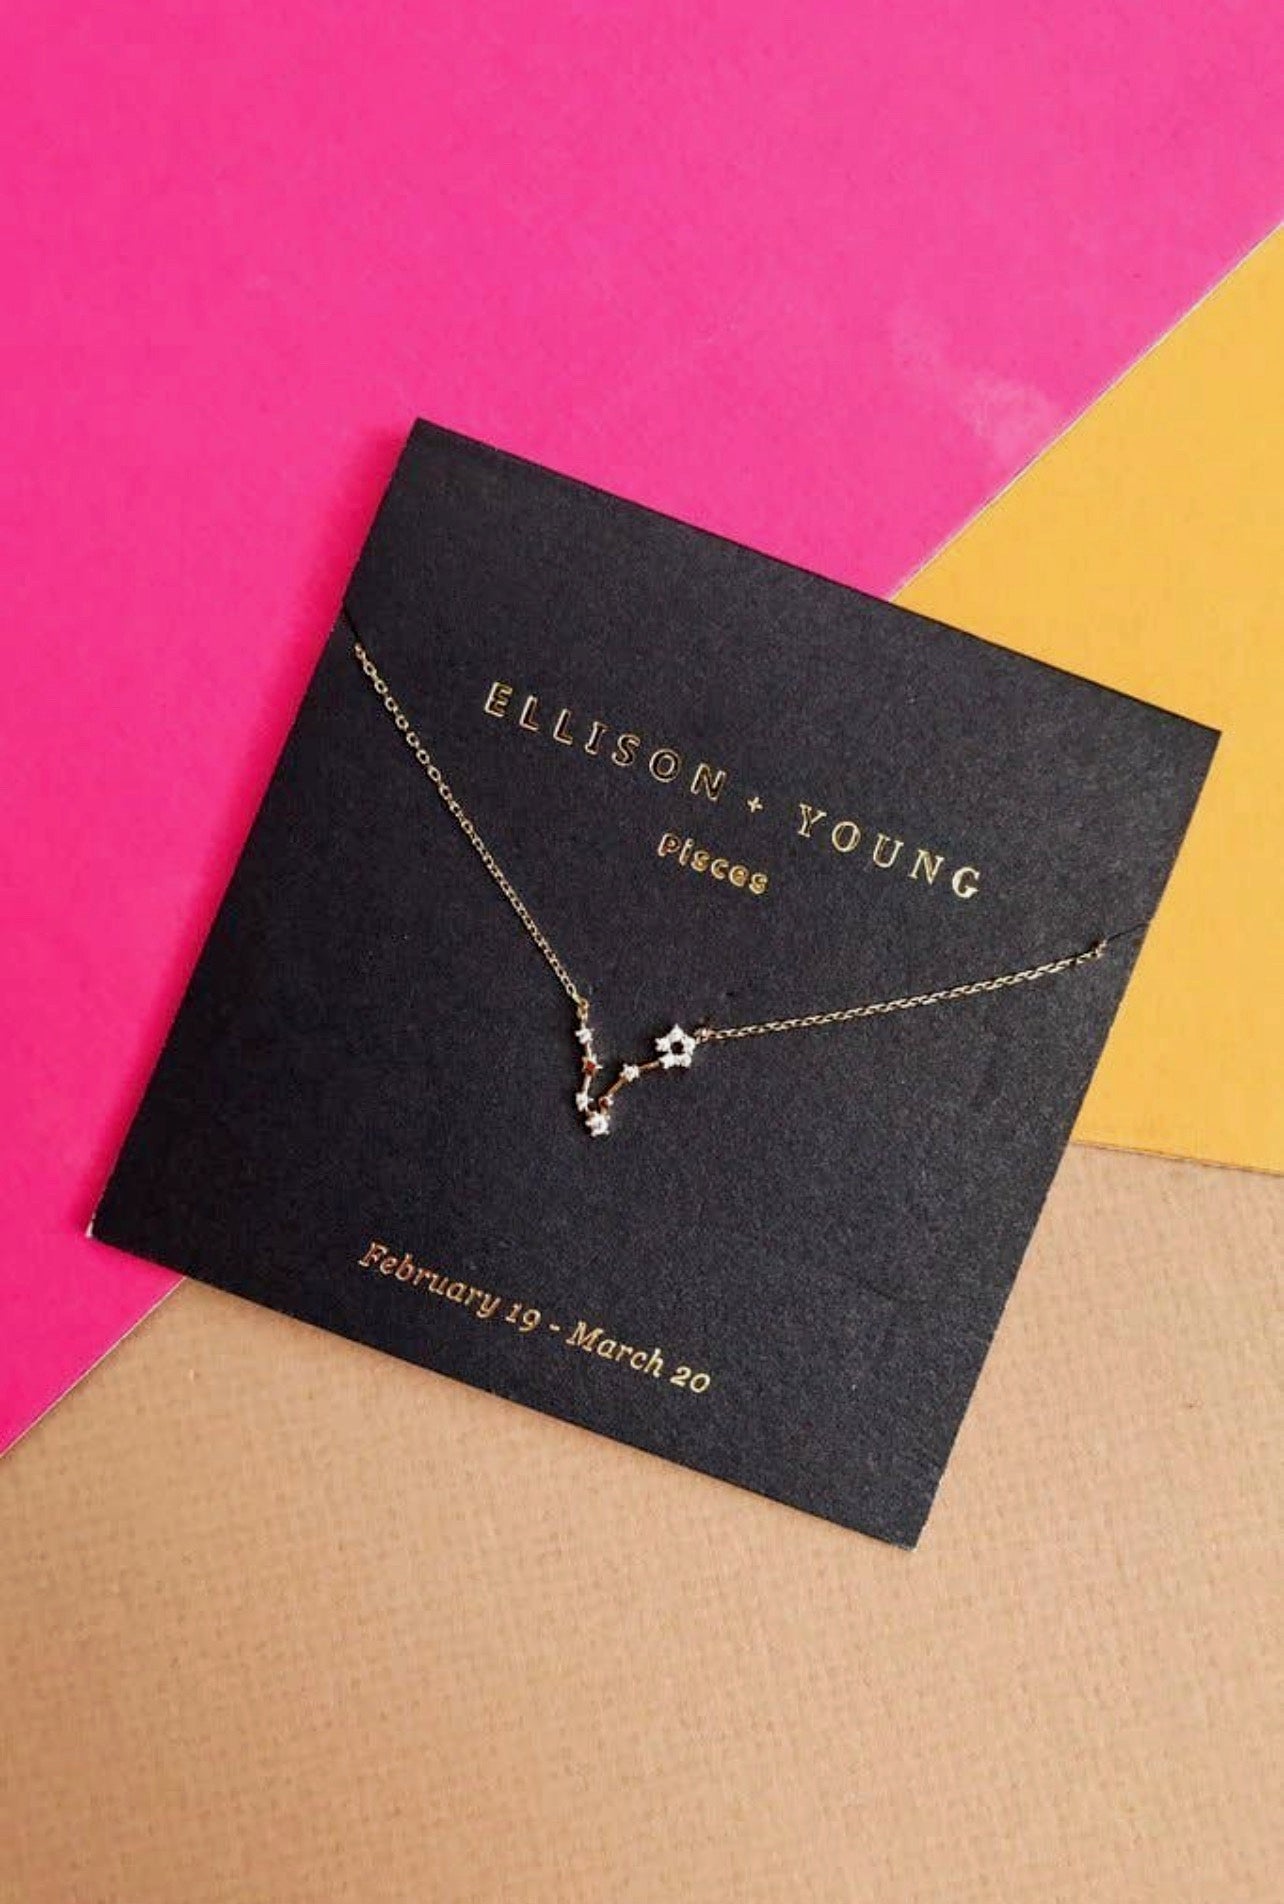 Ellison & Young-Zodiac Necklace